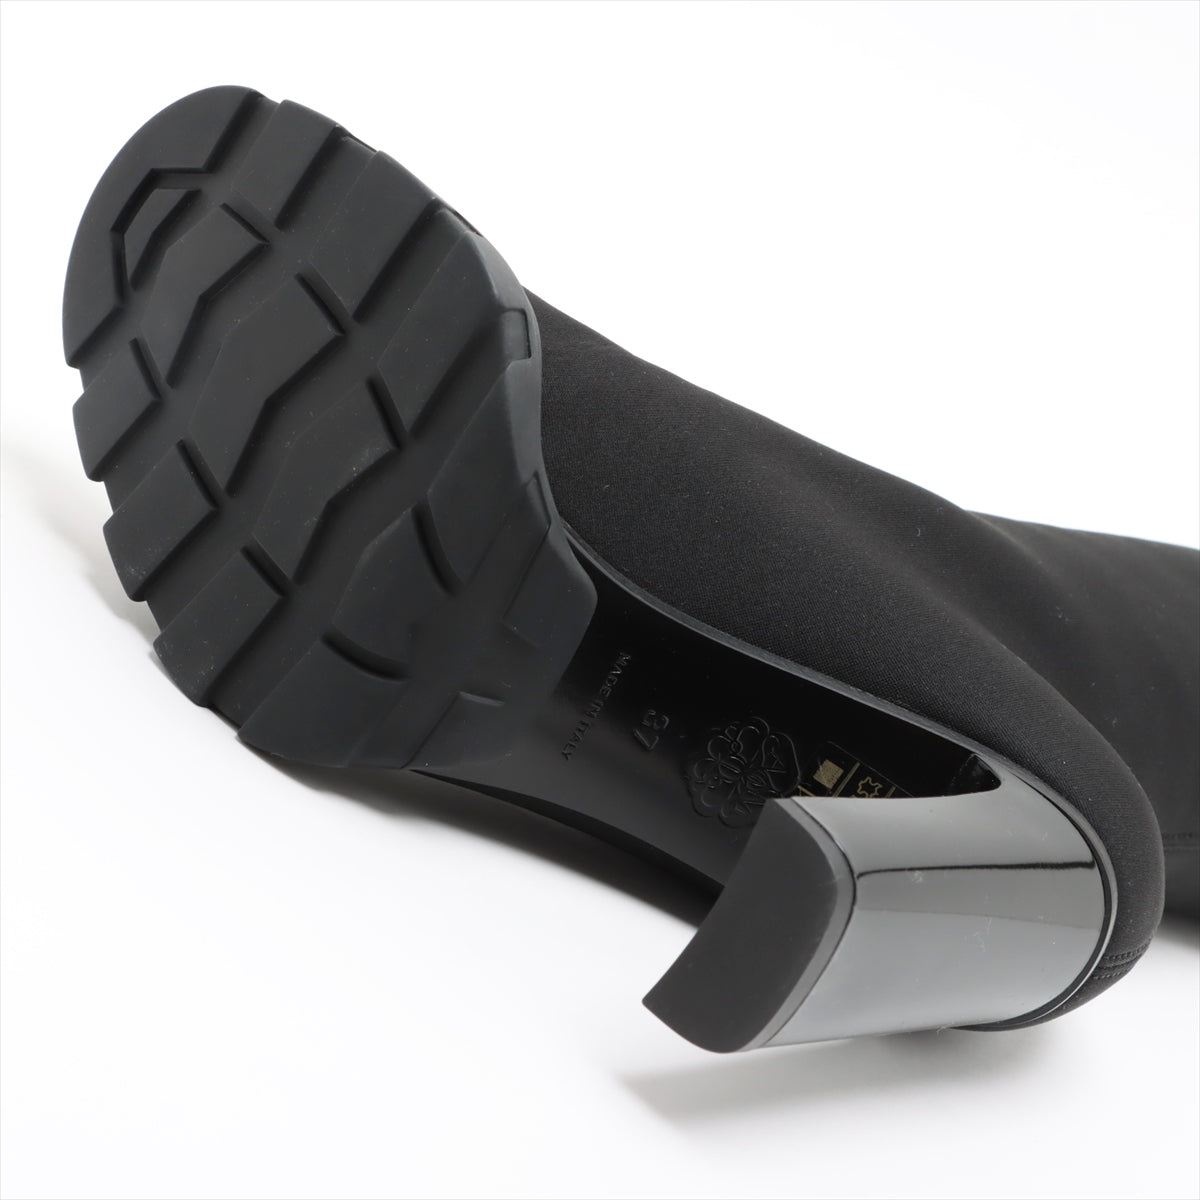 Alexander McQueen Fabric Boots 37  Black B688310 Front Zip Lift